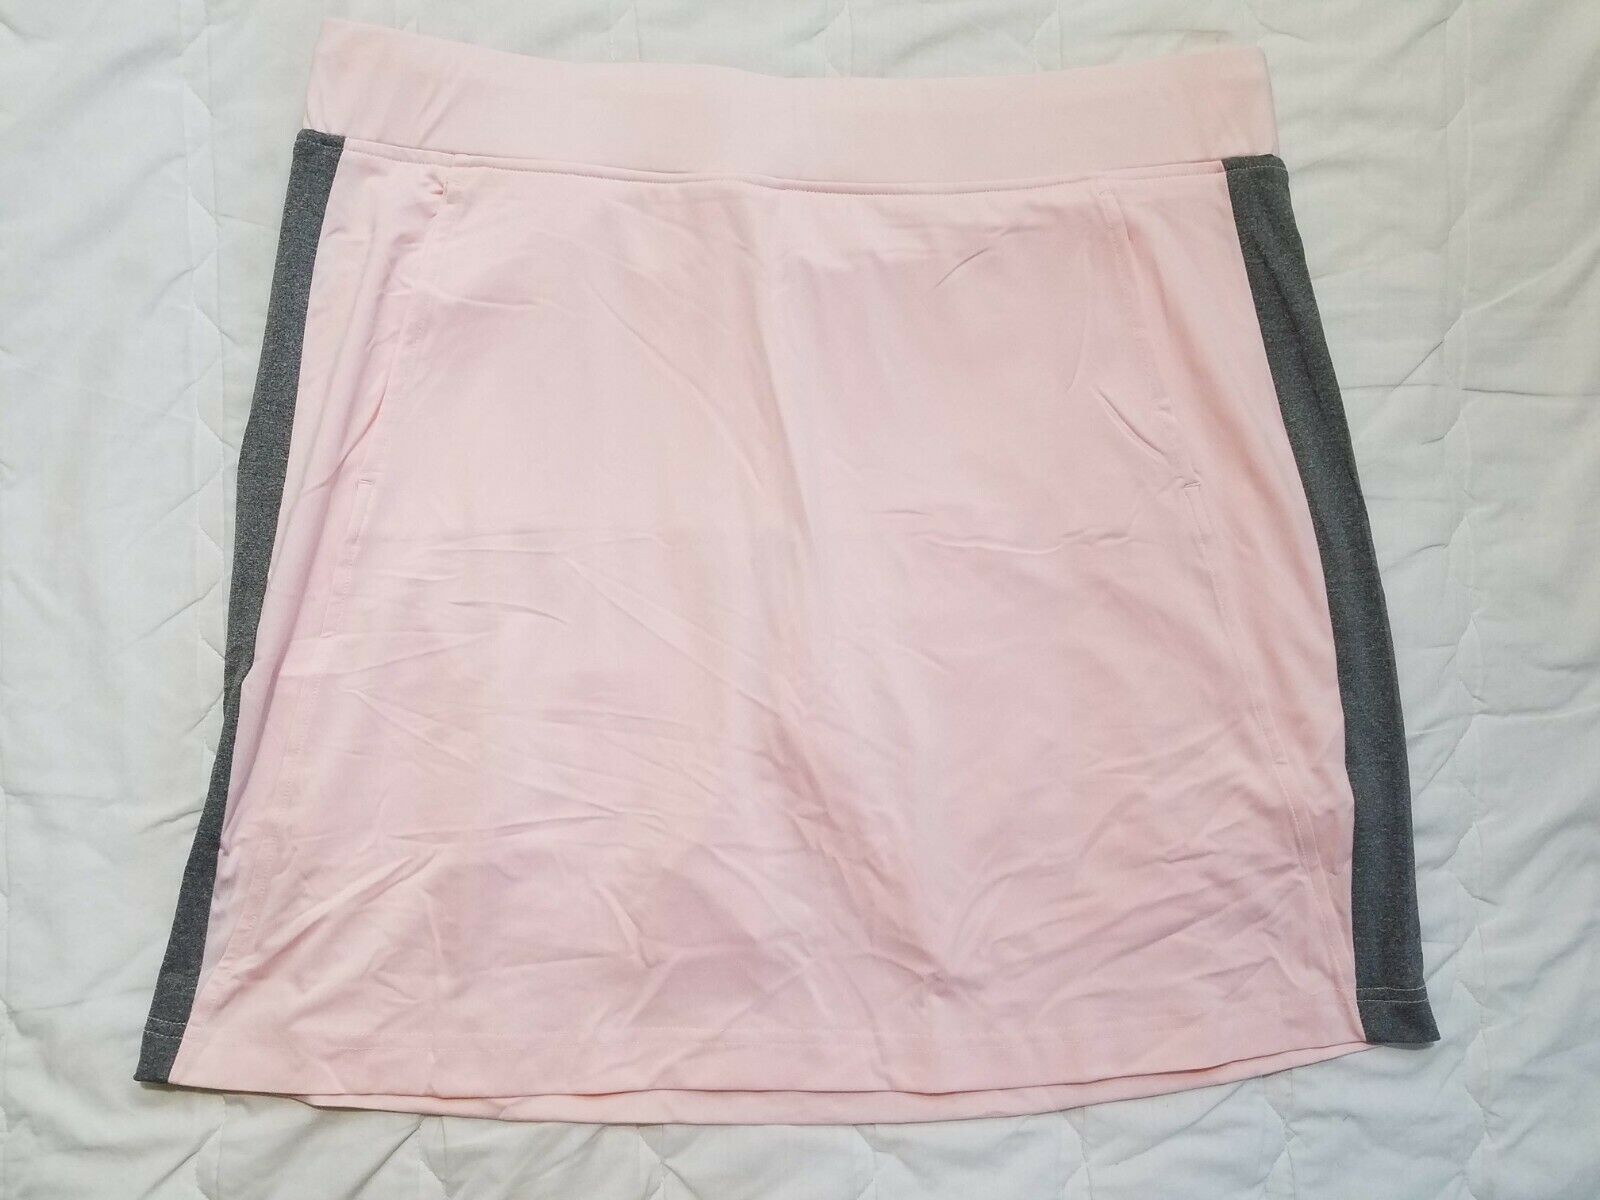 1 Nwt Sport Haley Women's Skort, Size: Large, Color: Light Pink/gray (j153)